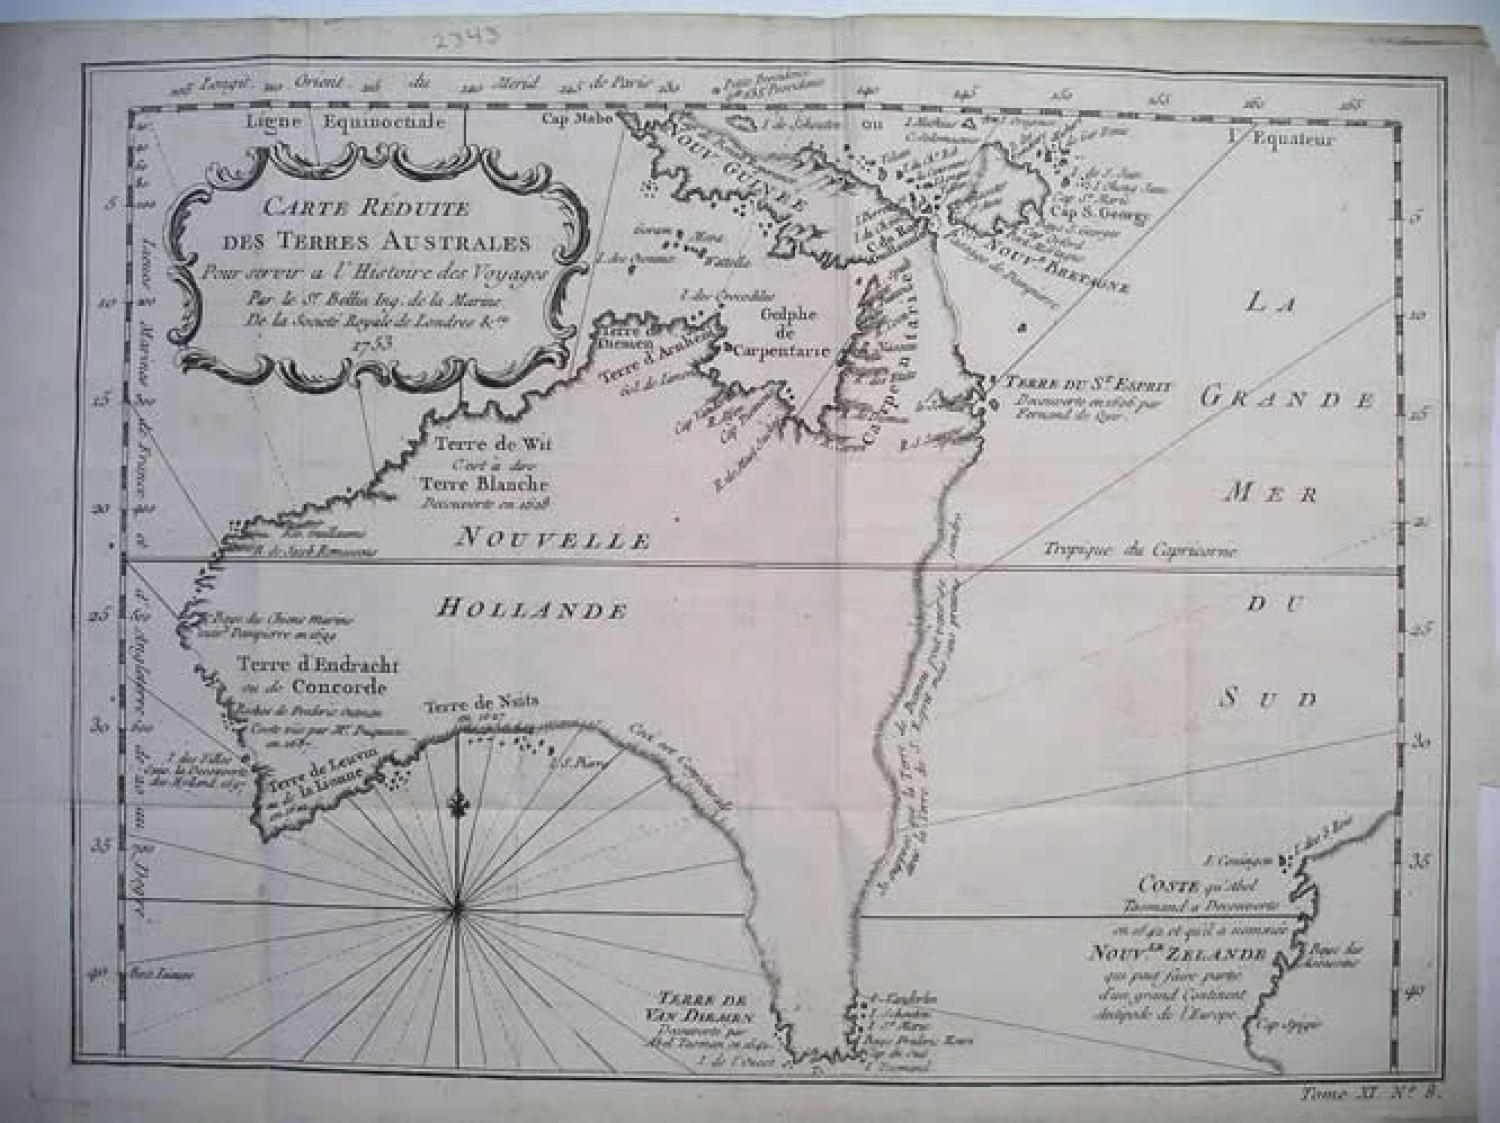 SOLD Carte Réduite des Terres Australes.